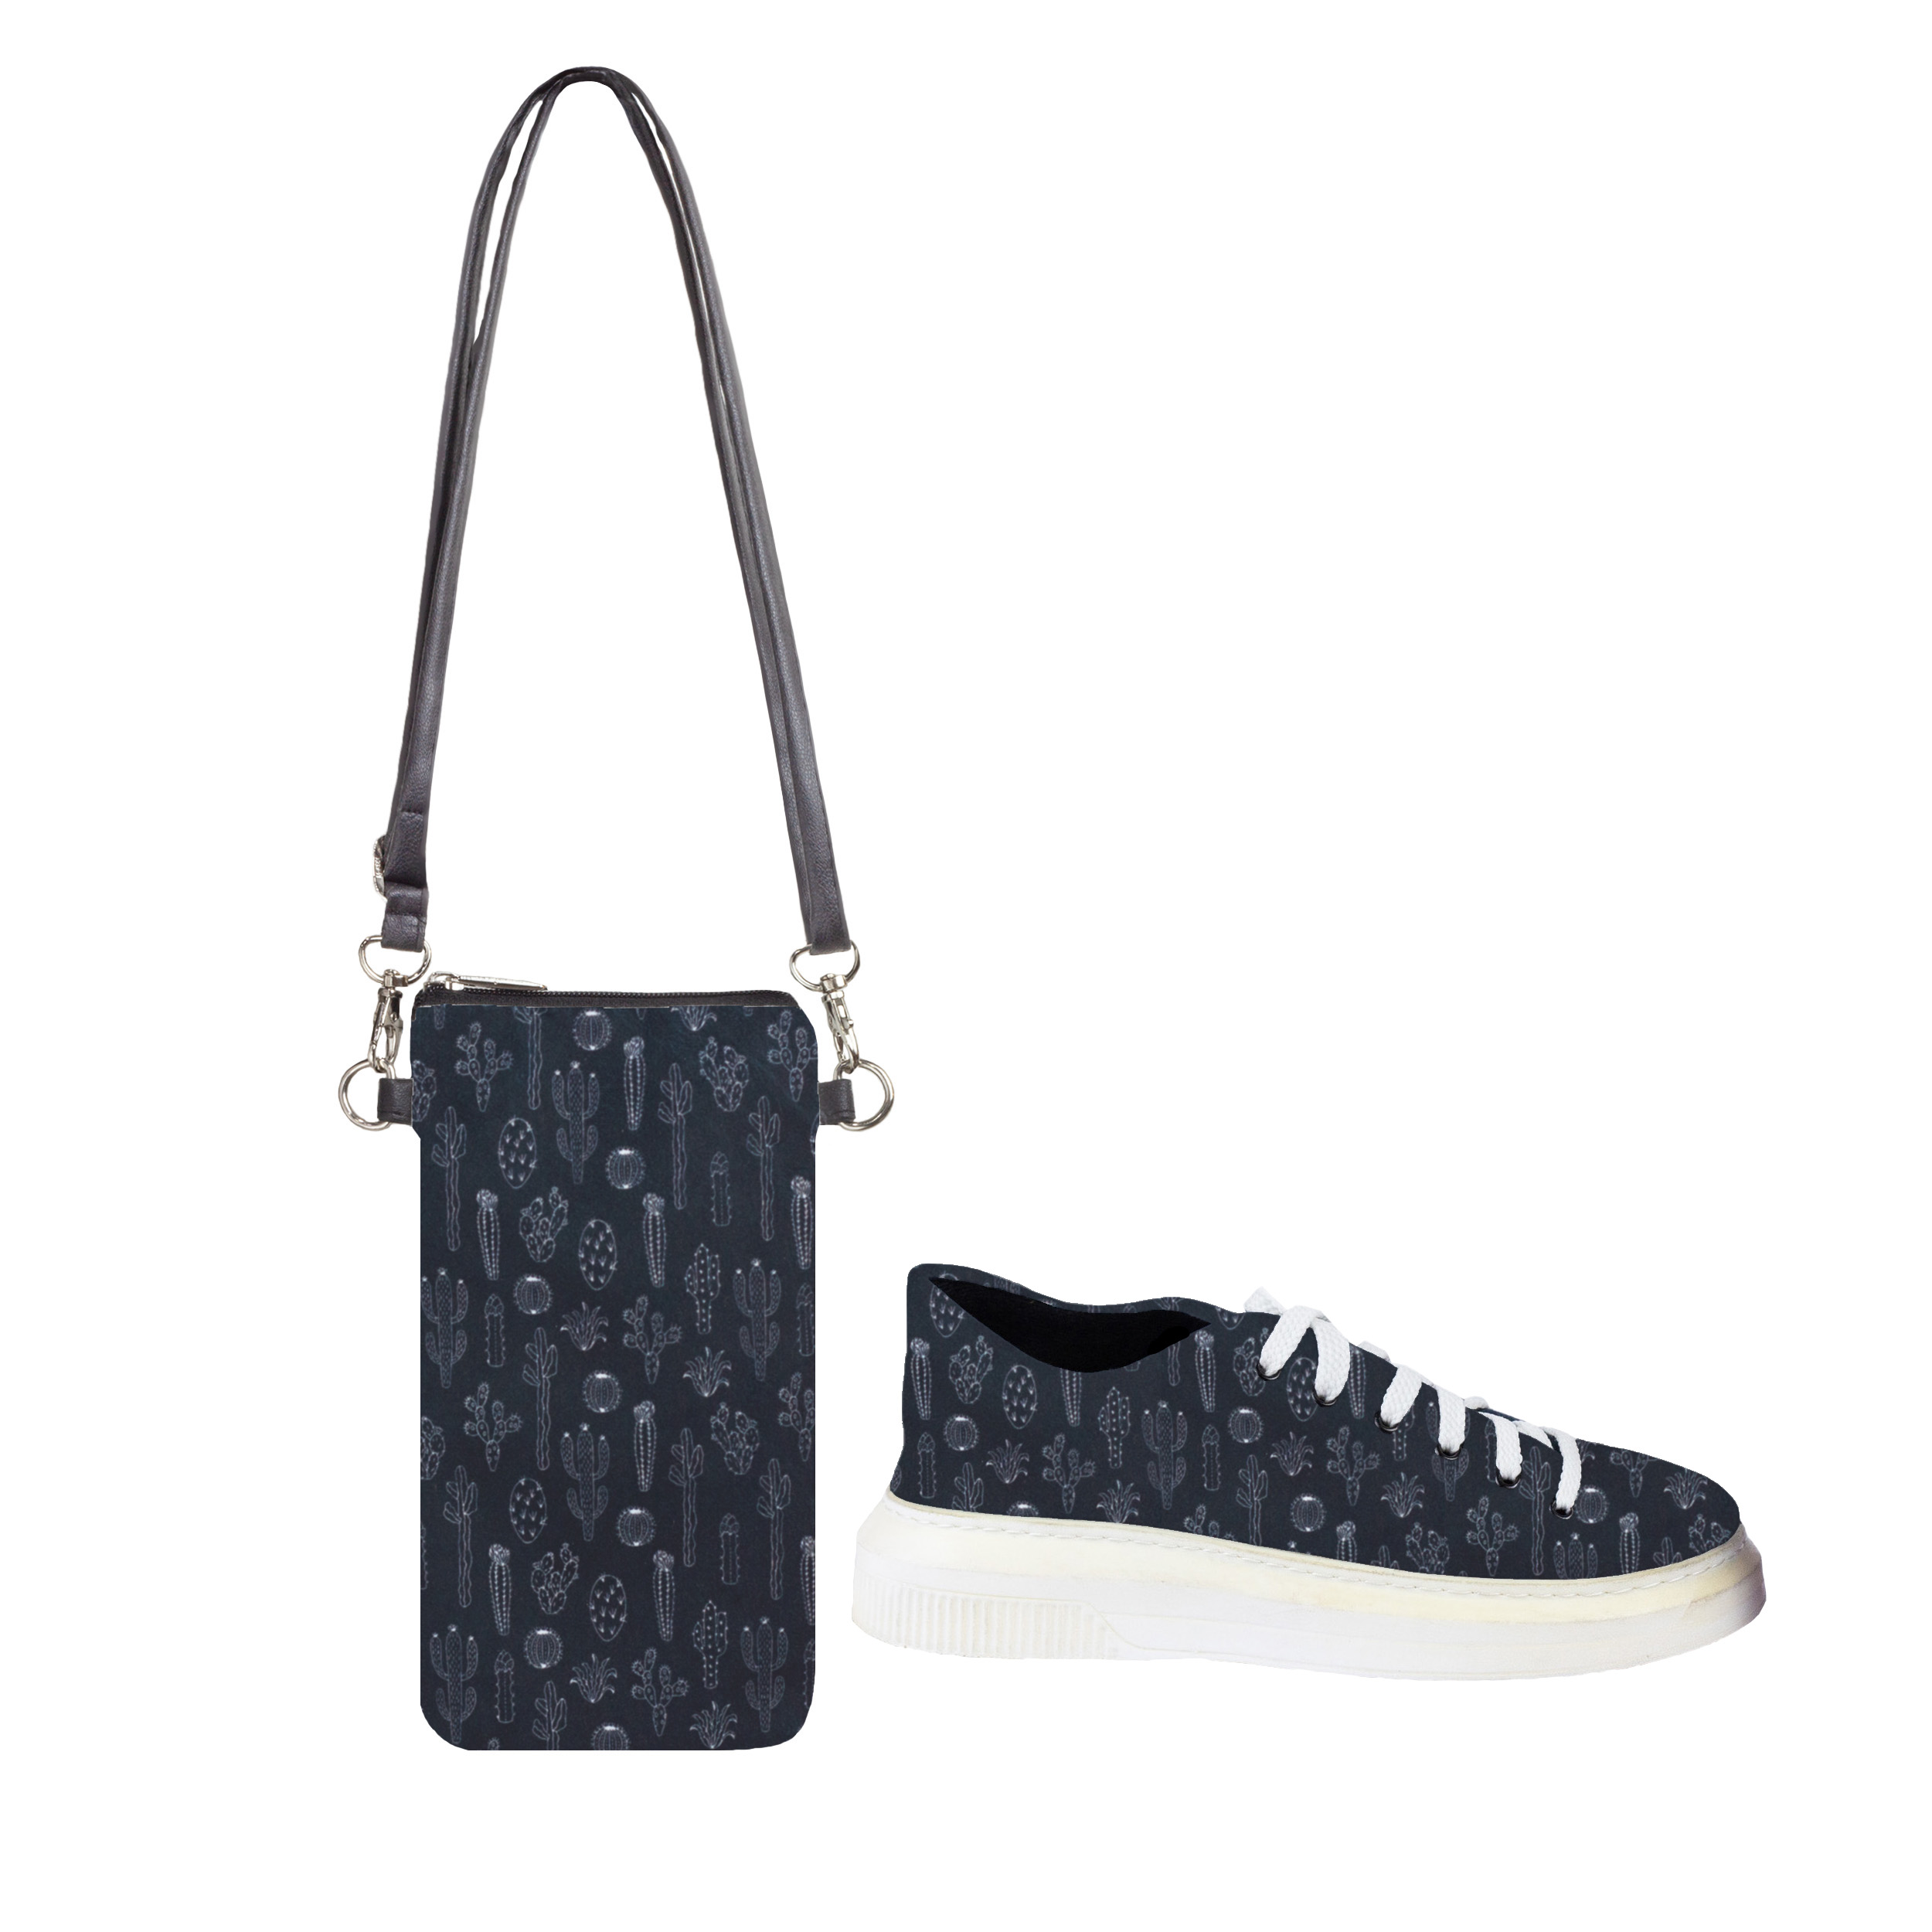 ست کیف و کفش زنانه مدل کاکتوس کد bllack